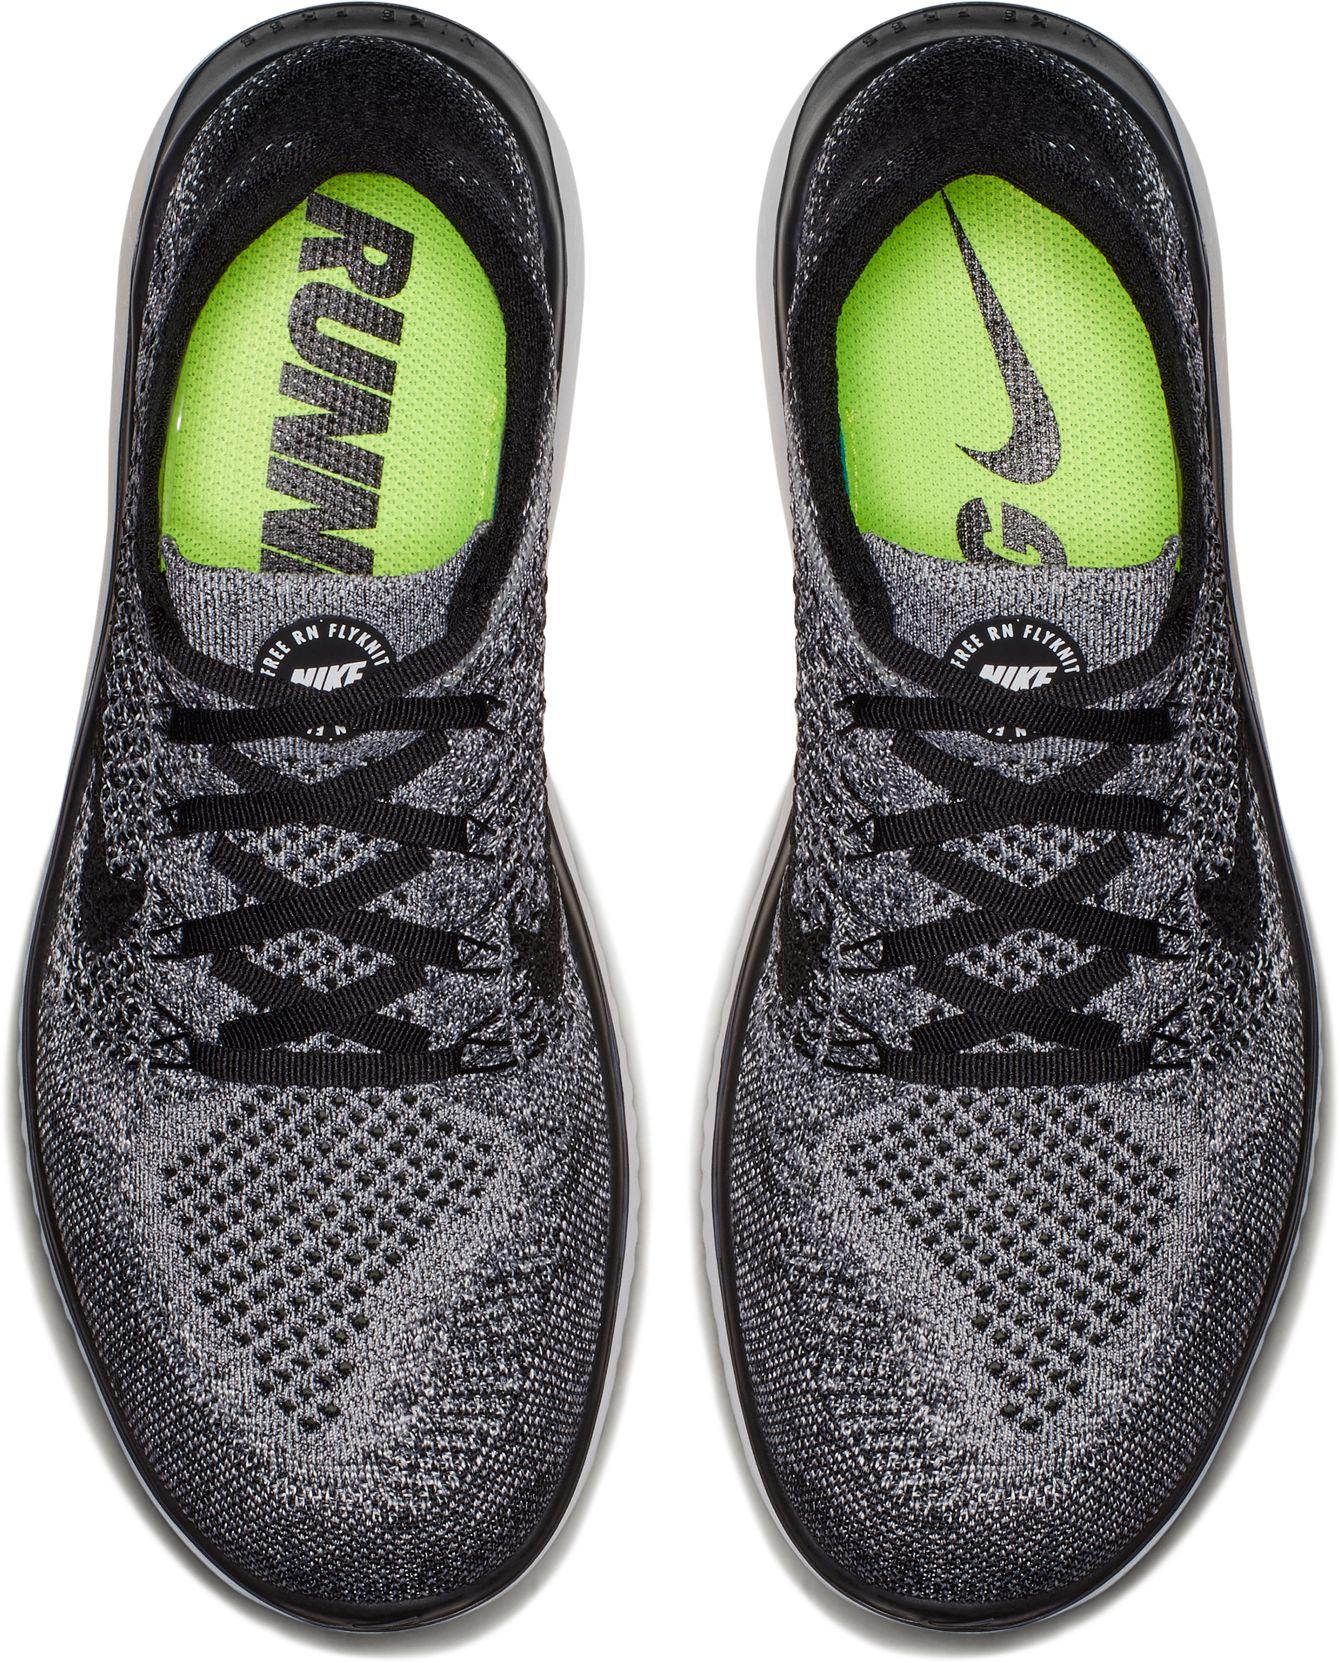 Nike Free Rn Flyknit 2018 Running Shoes in Black/White/Black (Black) for Men  - Lyst